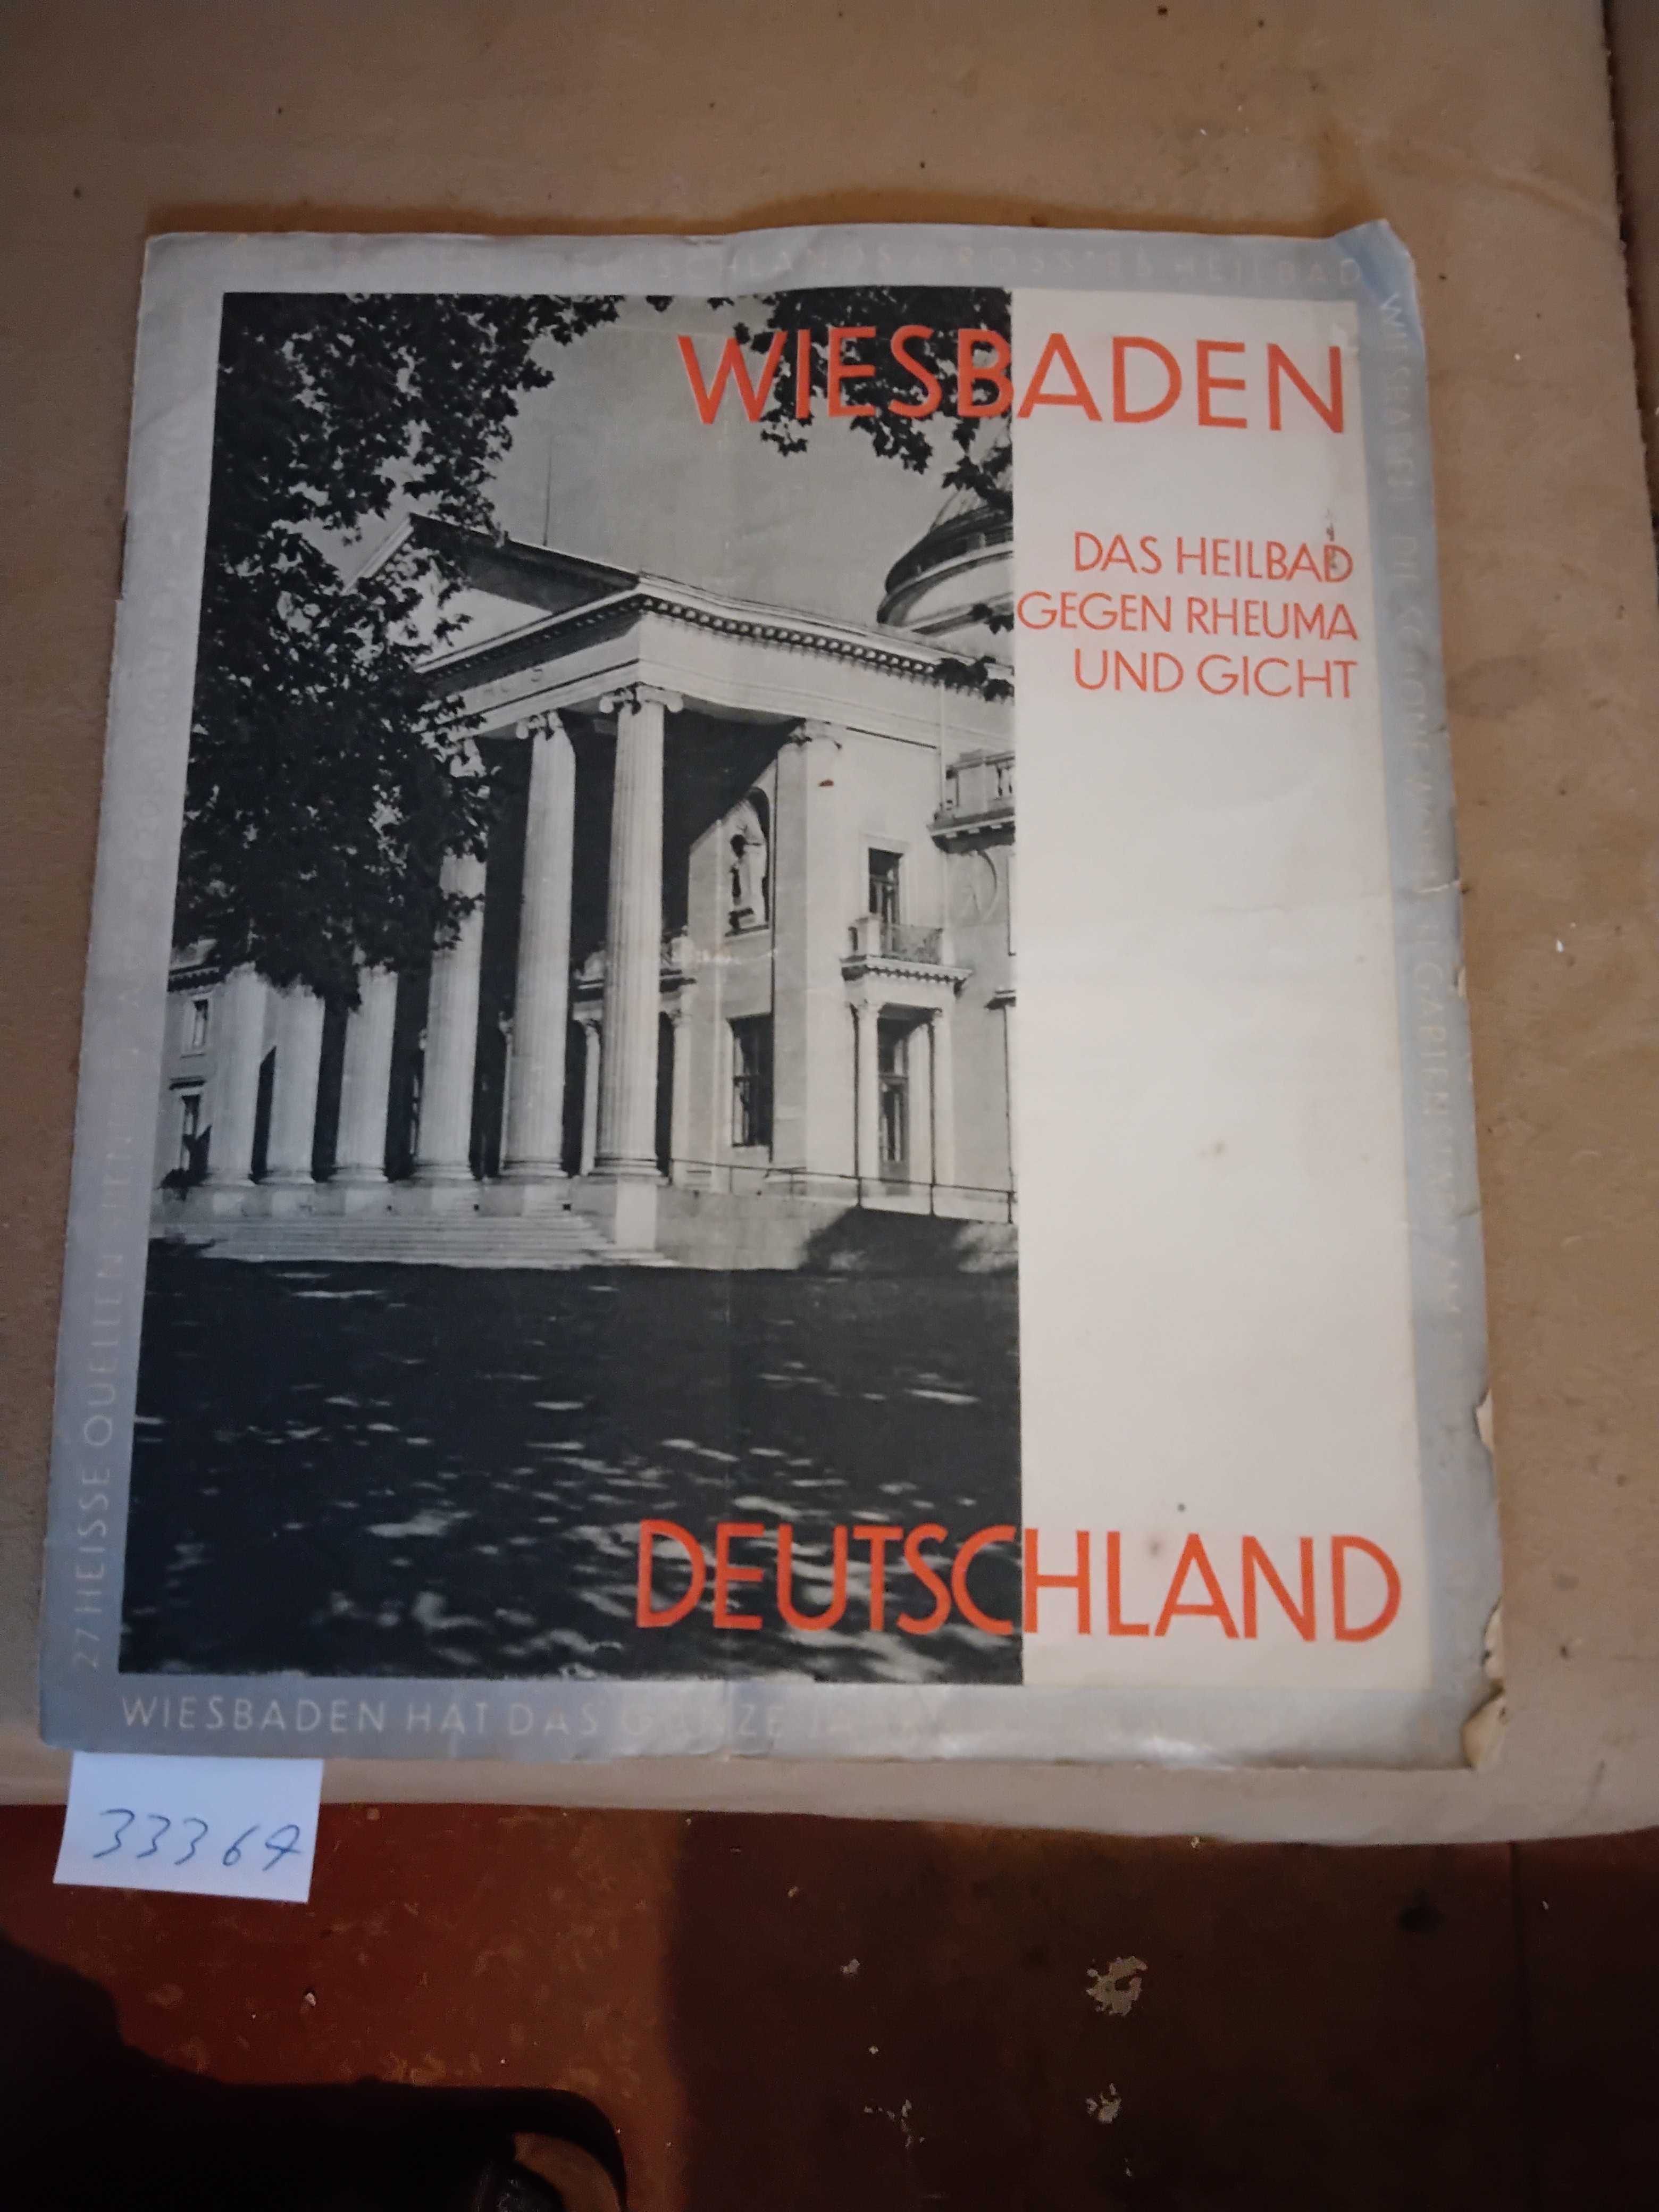 "."  Wiesbaden  Das Heilbad gegen Rheuma und Gicht 